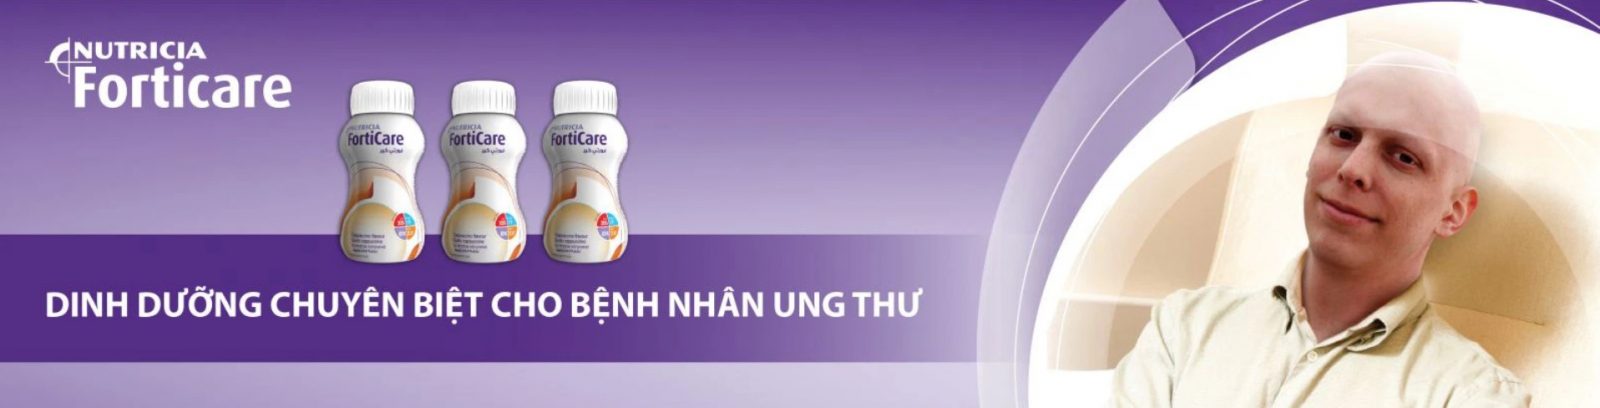 Top 6 loại sữa dành cho người UNG THƯ THỰC QUẢN được chuyên gia khuyên dùng